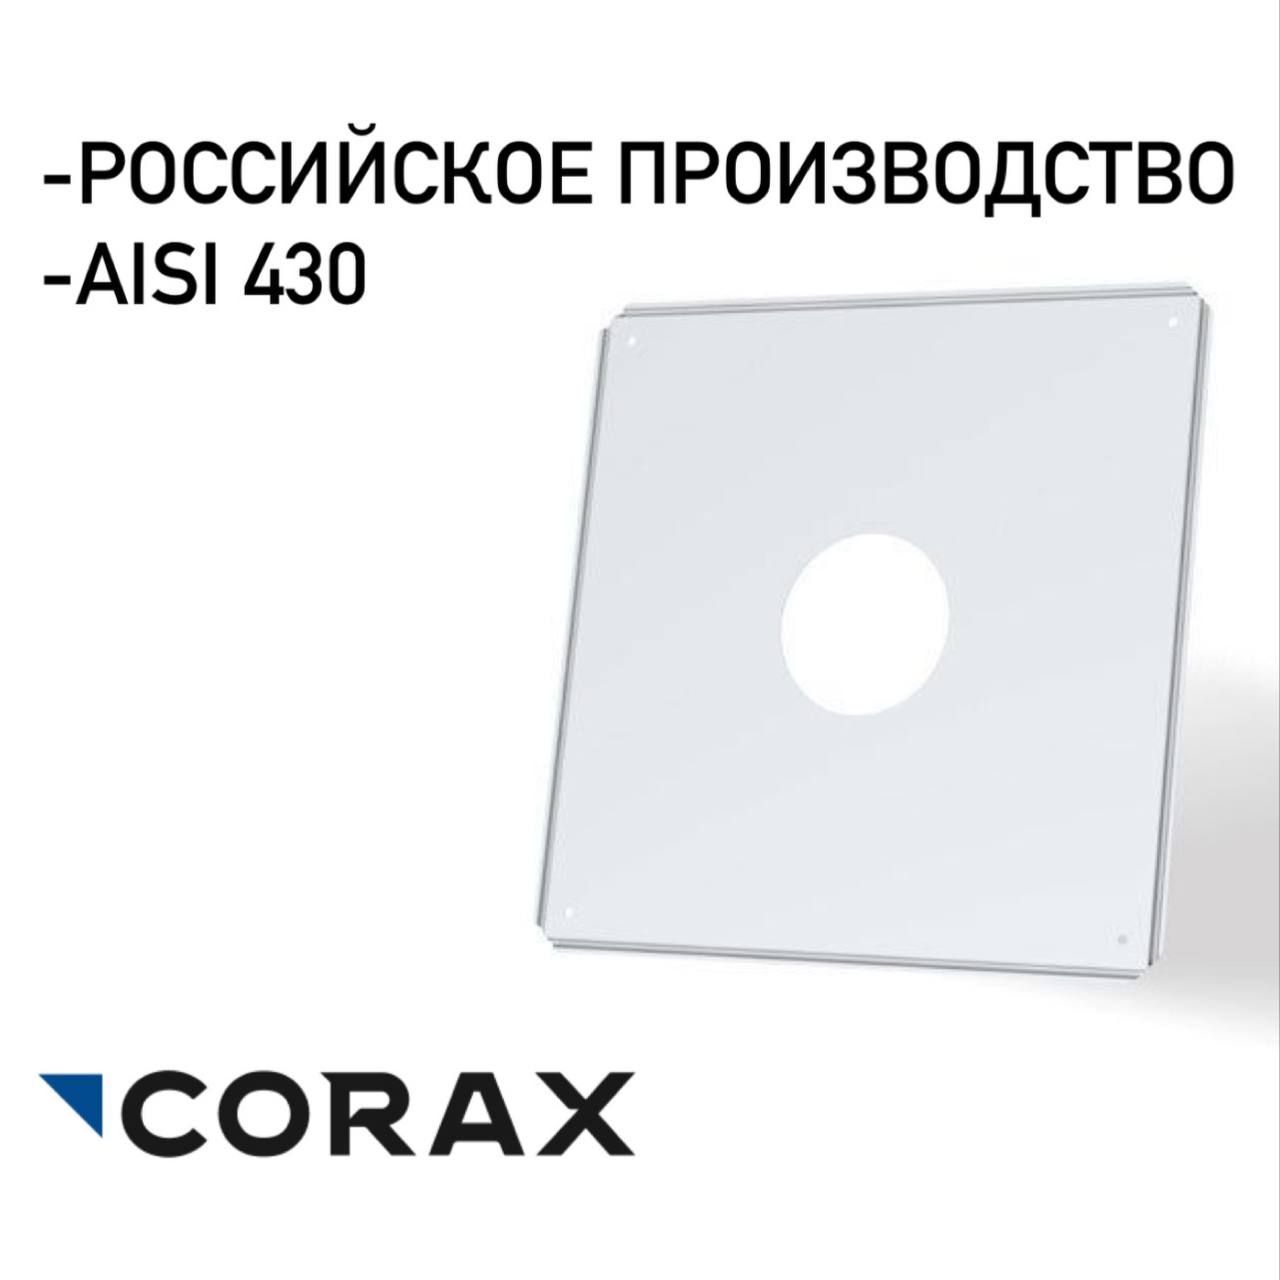 Экранзащитныйдлядымохода500х500сотверстием(430/.05)CORAX